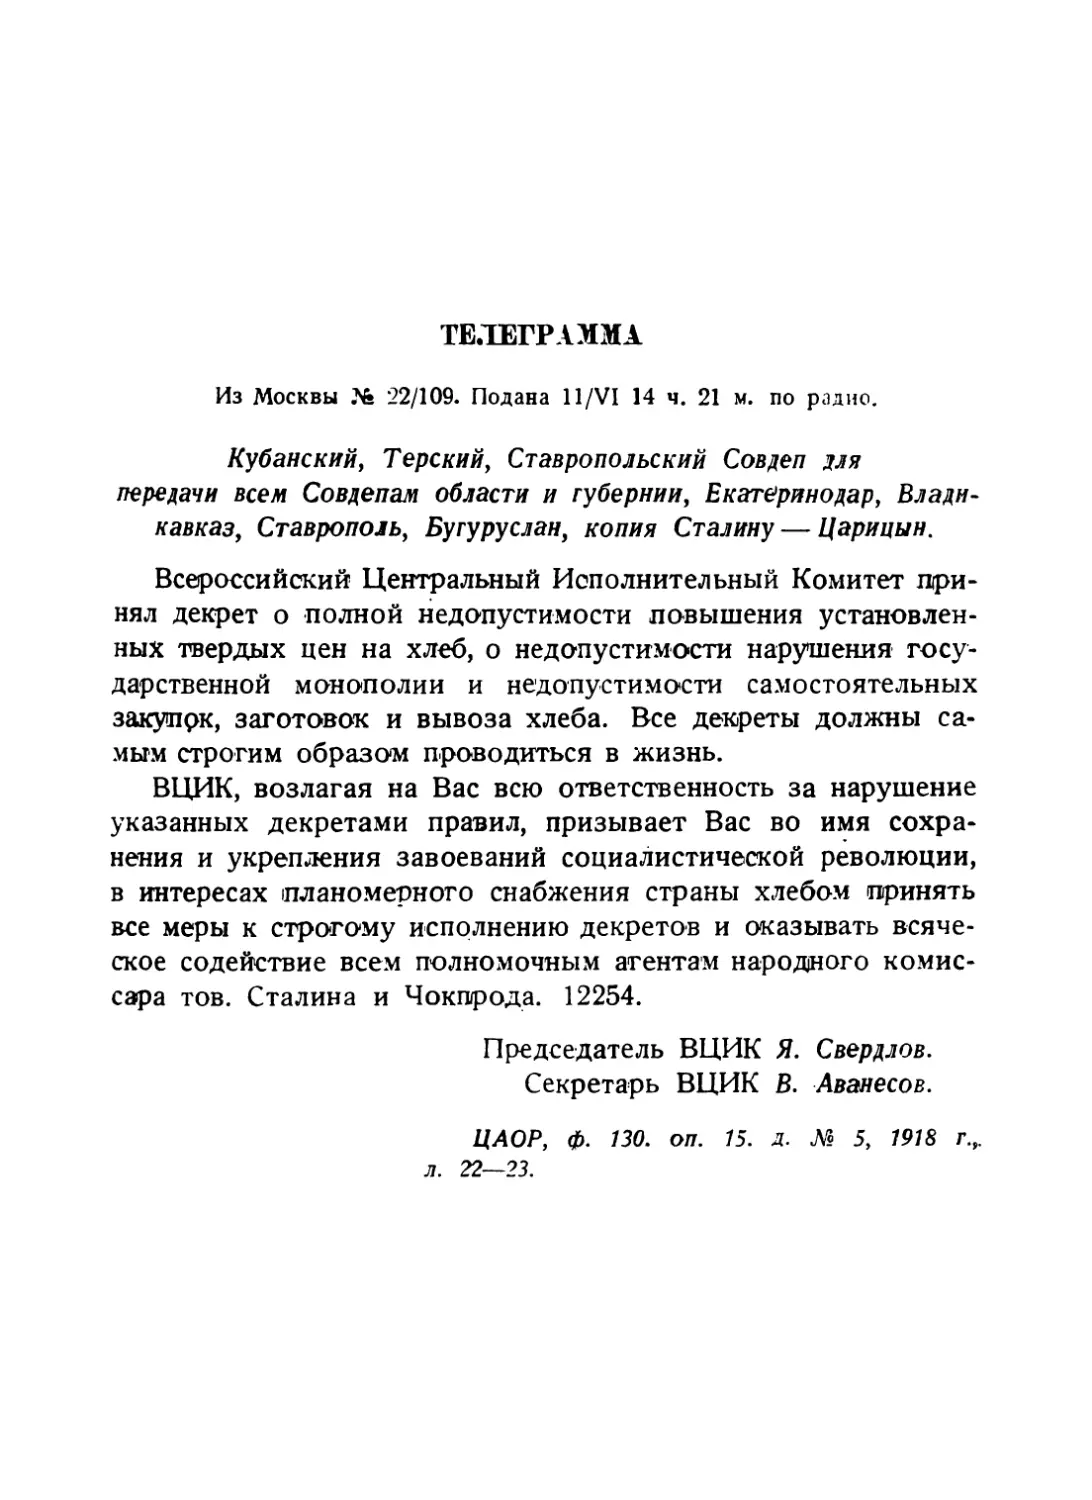 Телеграмма Кубанскому, Терскому и Ставропольскому совдепам от 11 июня 1918 г